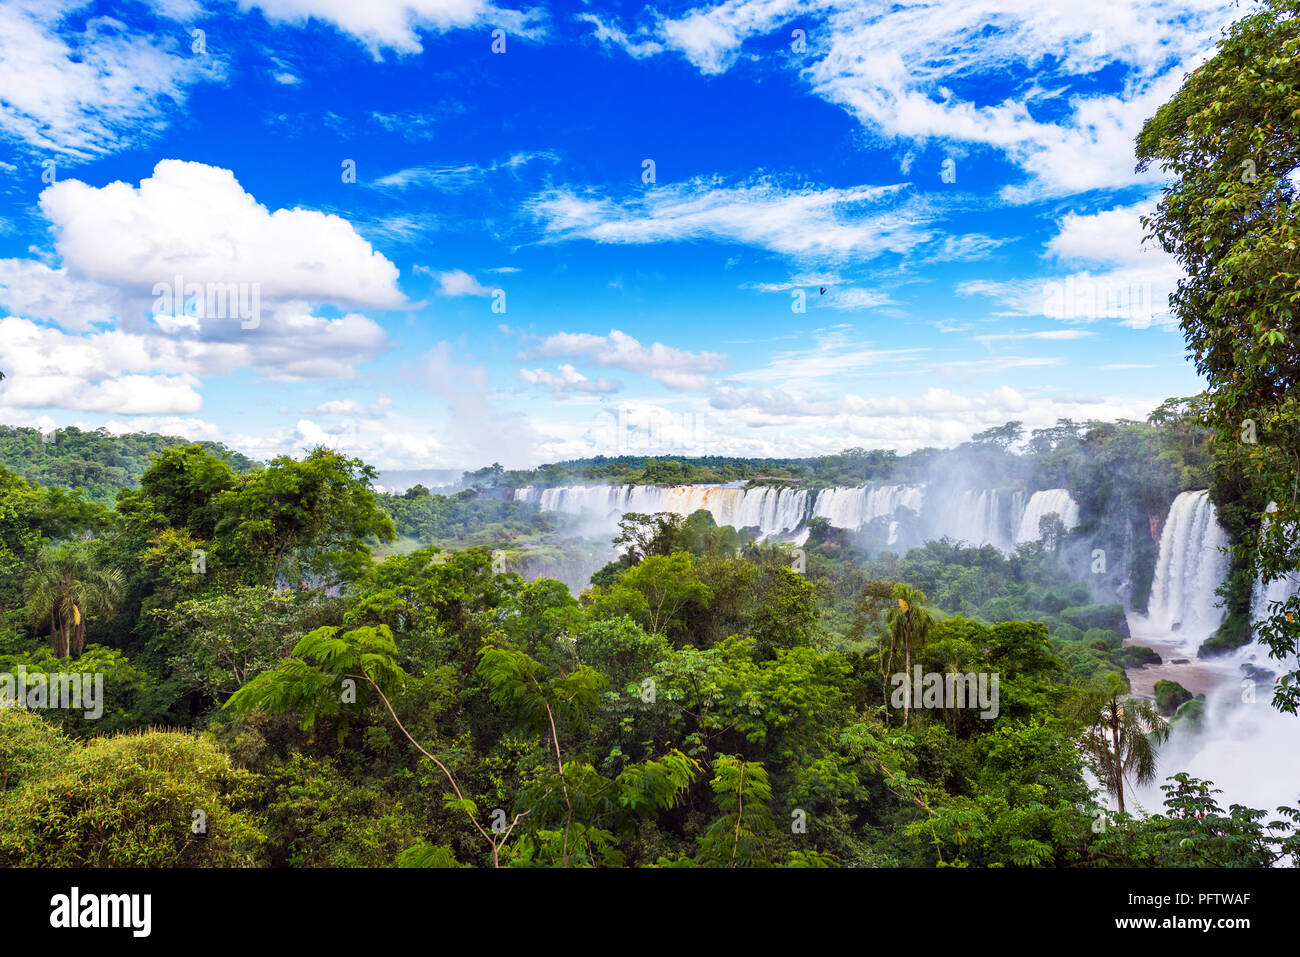 Vue sur la cascade de la rivière Iguazu, situé sur la frontière du Brésil et l'Argentine Banque D'Images